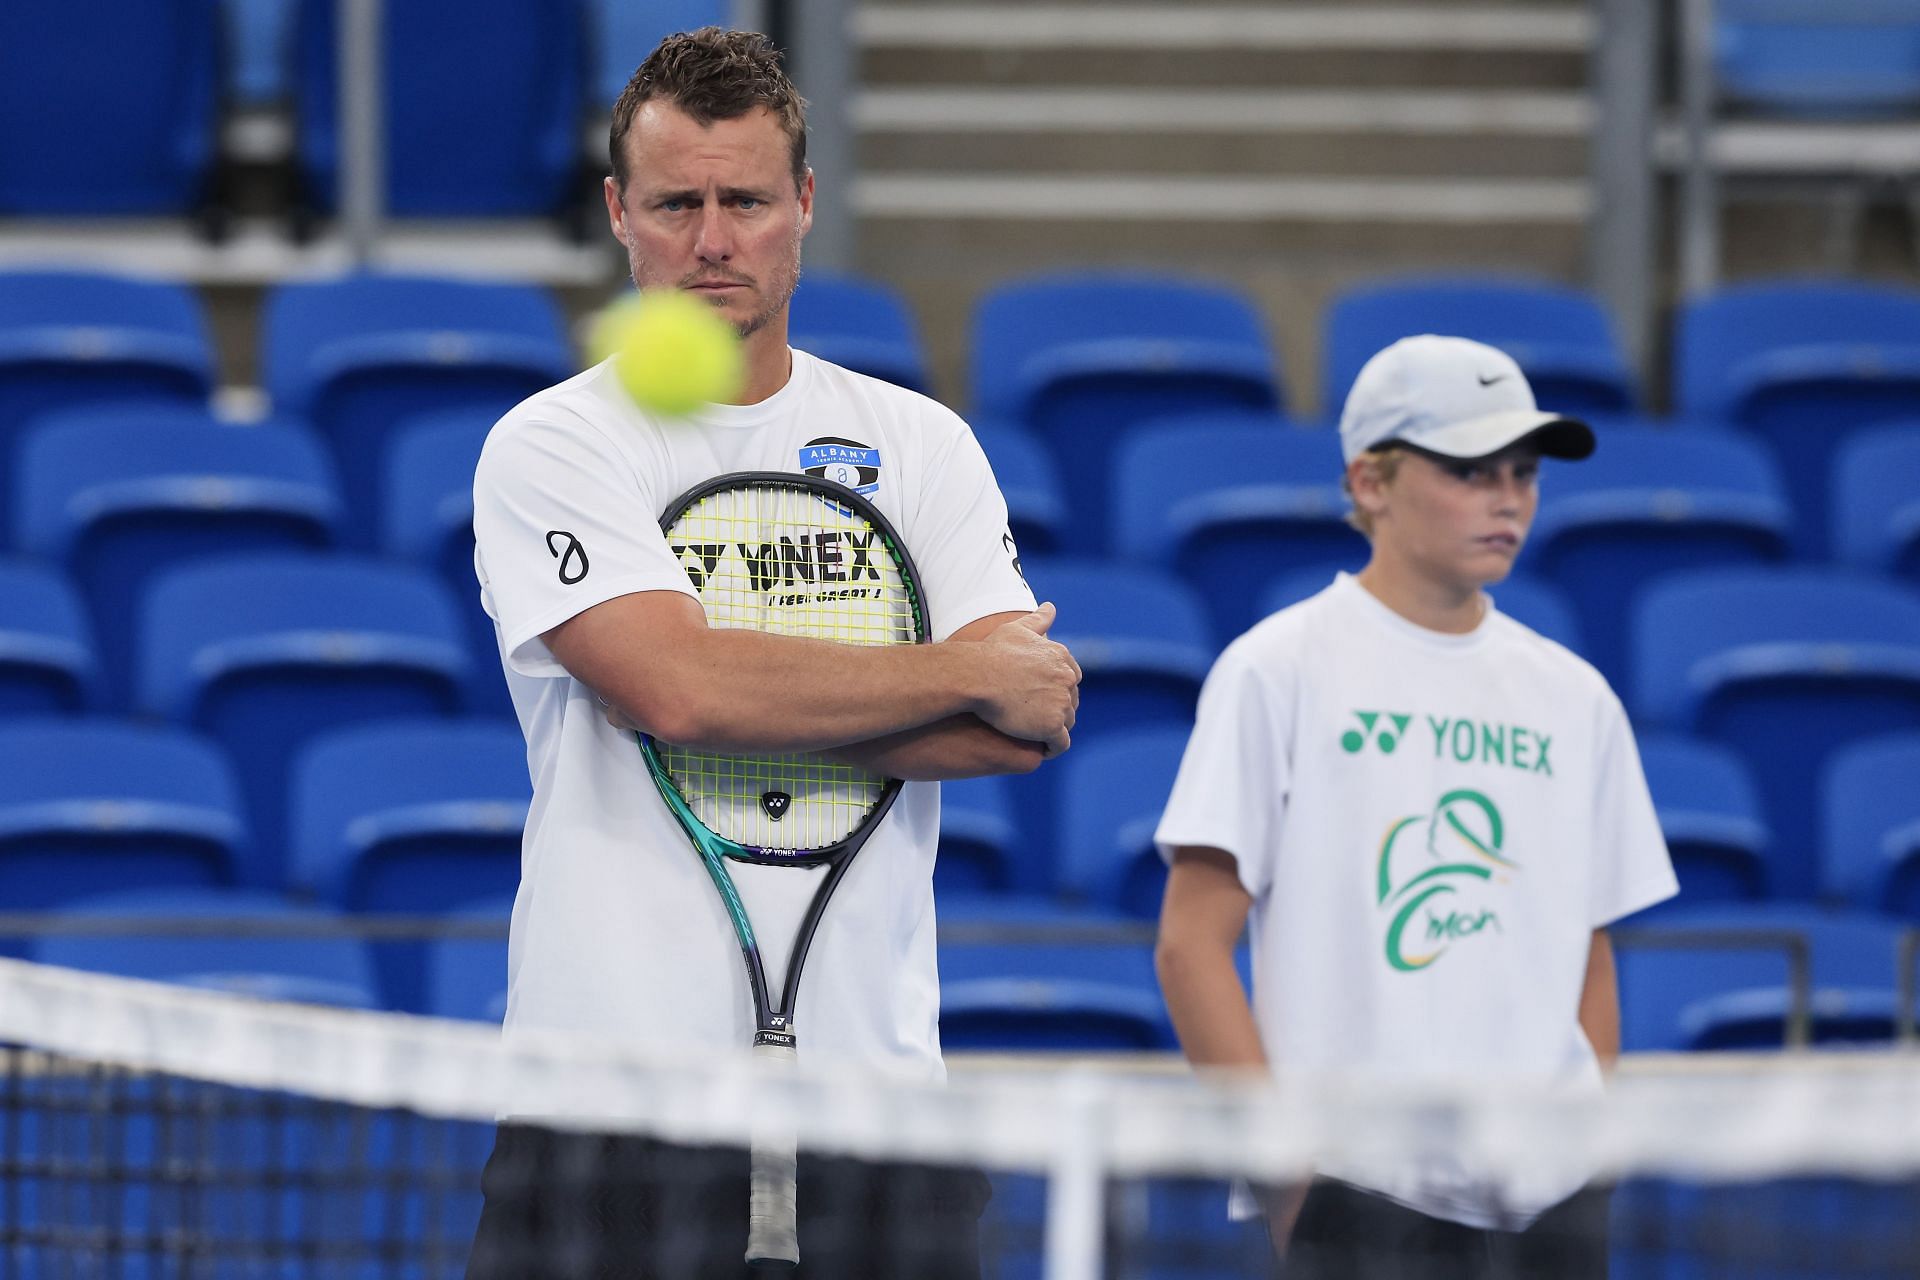 Cruz Hewitt, son of Lleyton Hewitt, is developing his tennis career